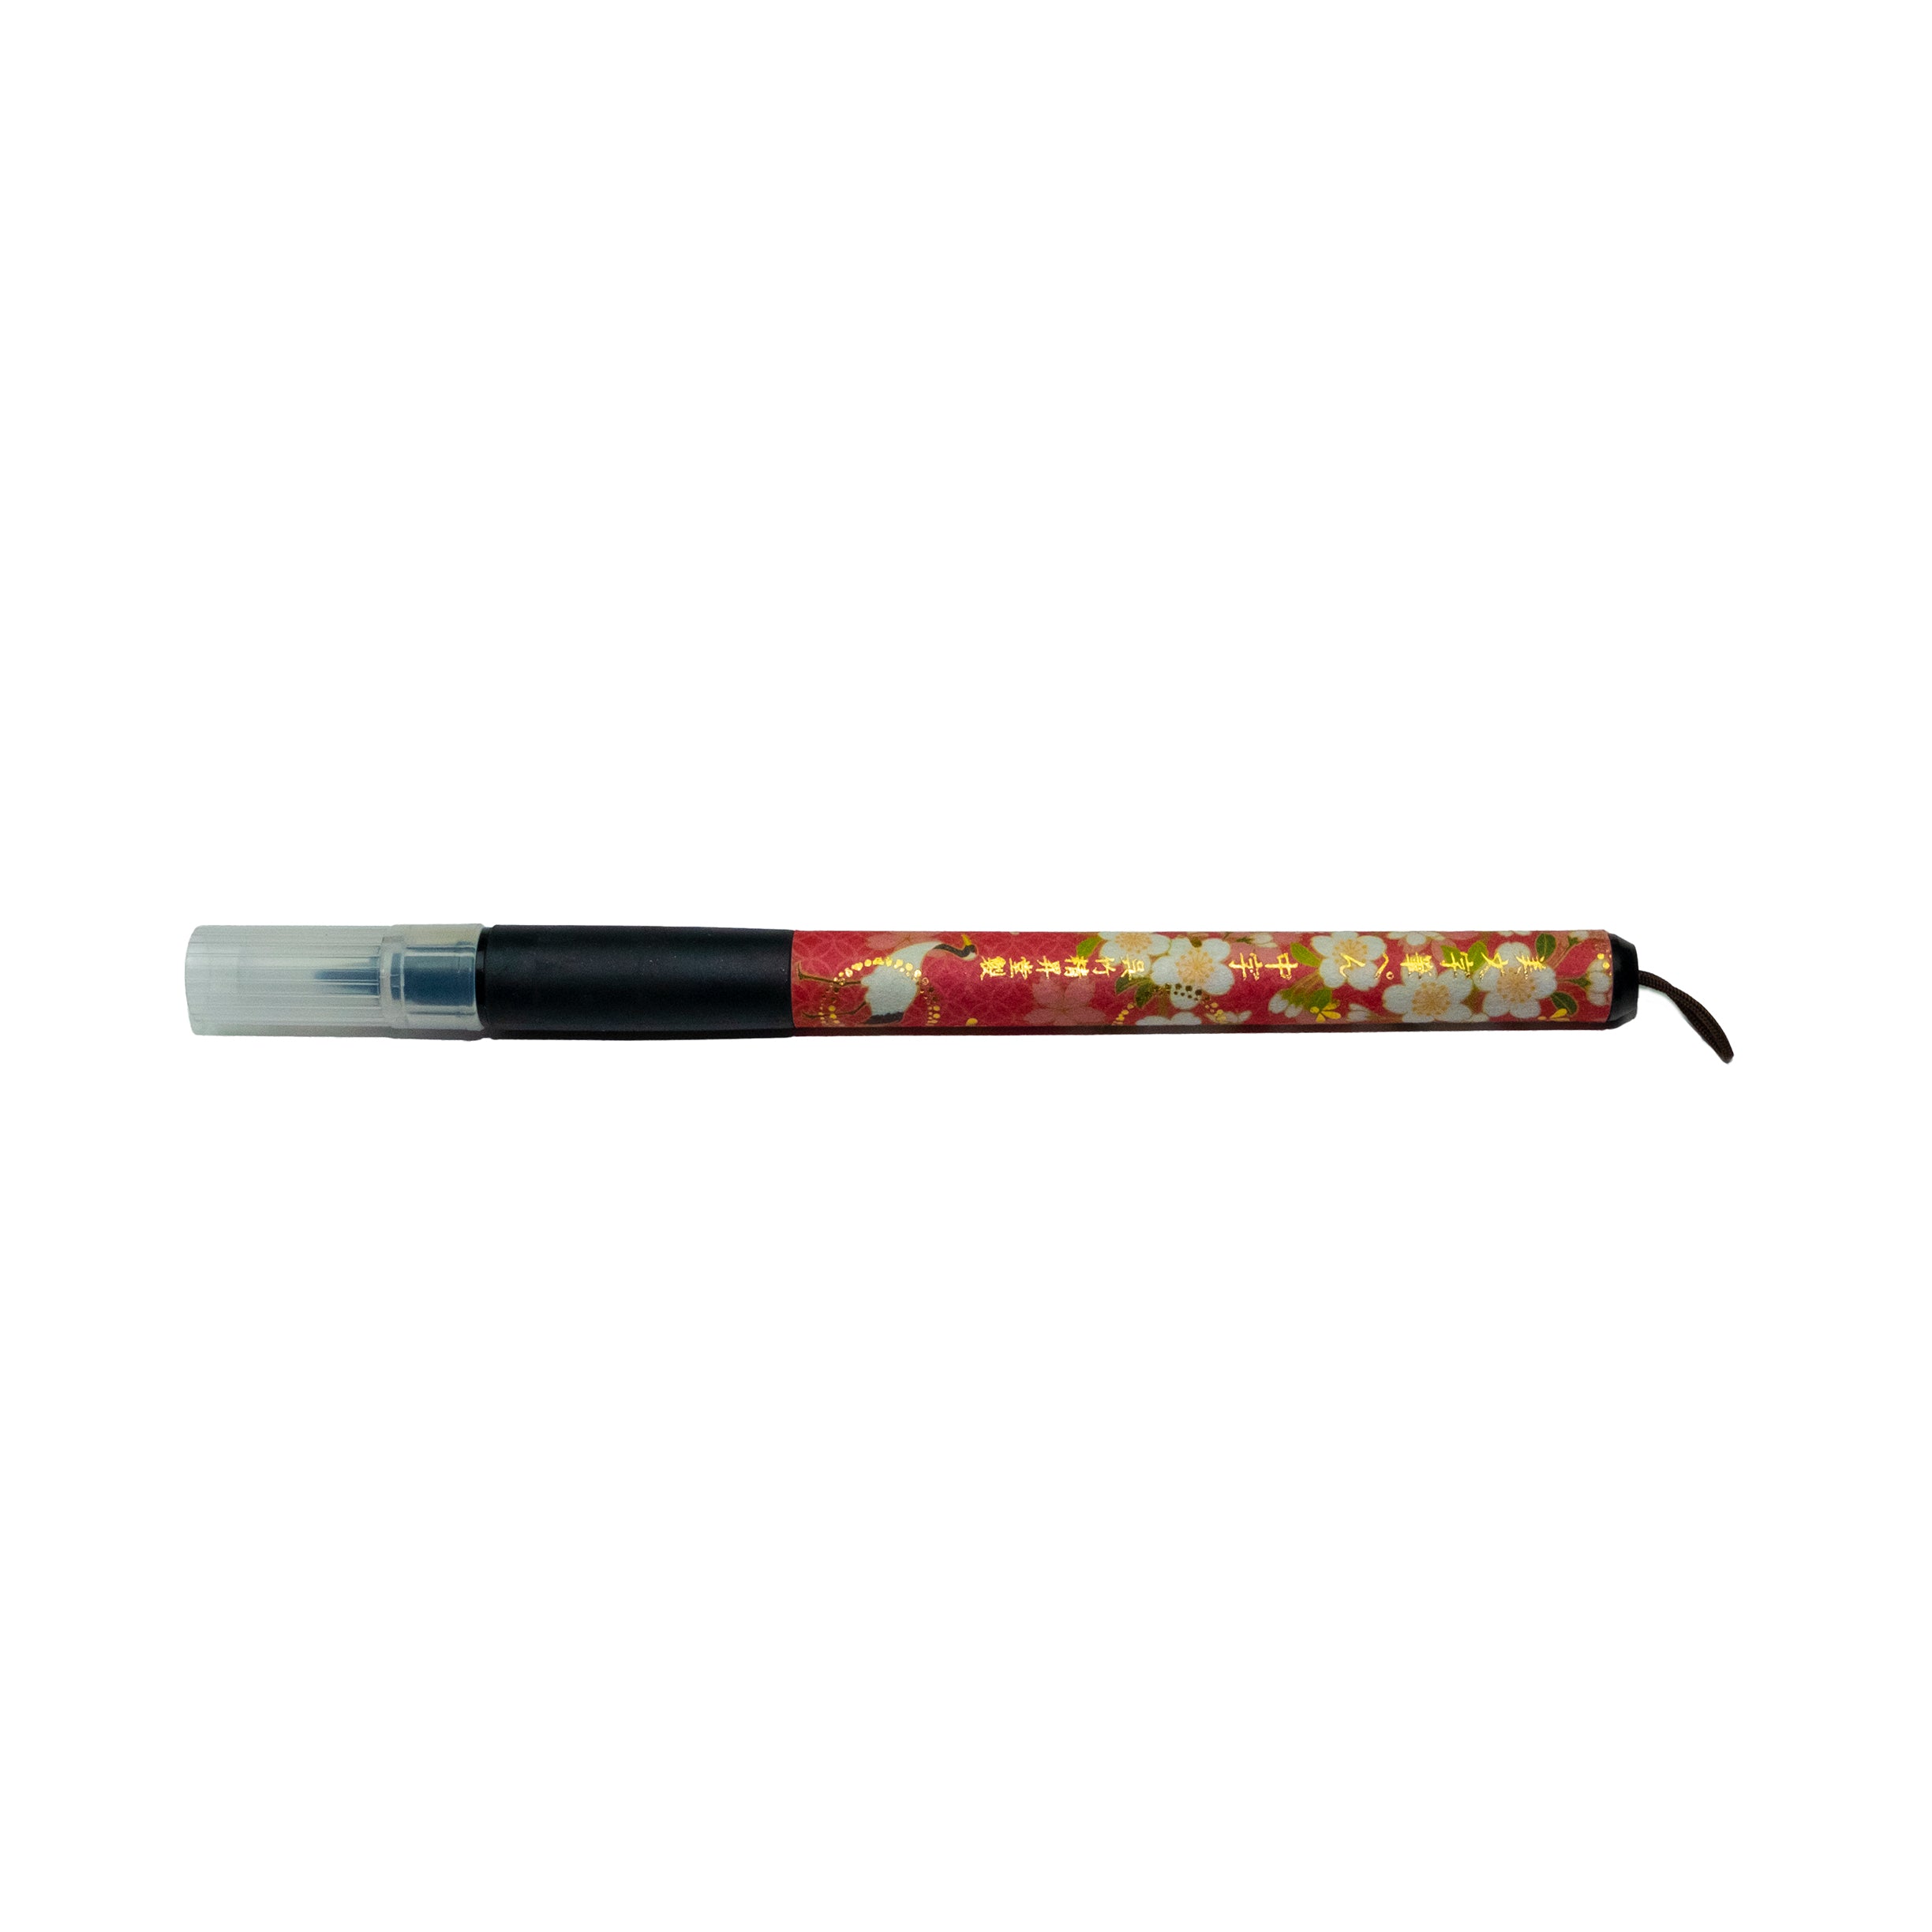 ZIG Kuretake Bimoji Fude Brush Pen, XT5 Medium (Bristles) 0.5-8.0 mm